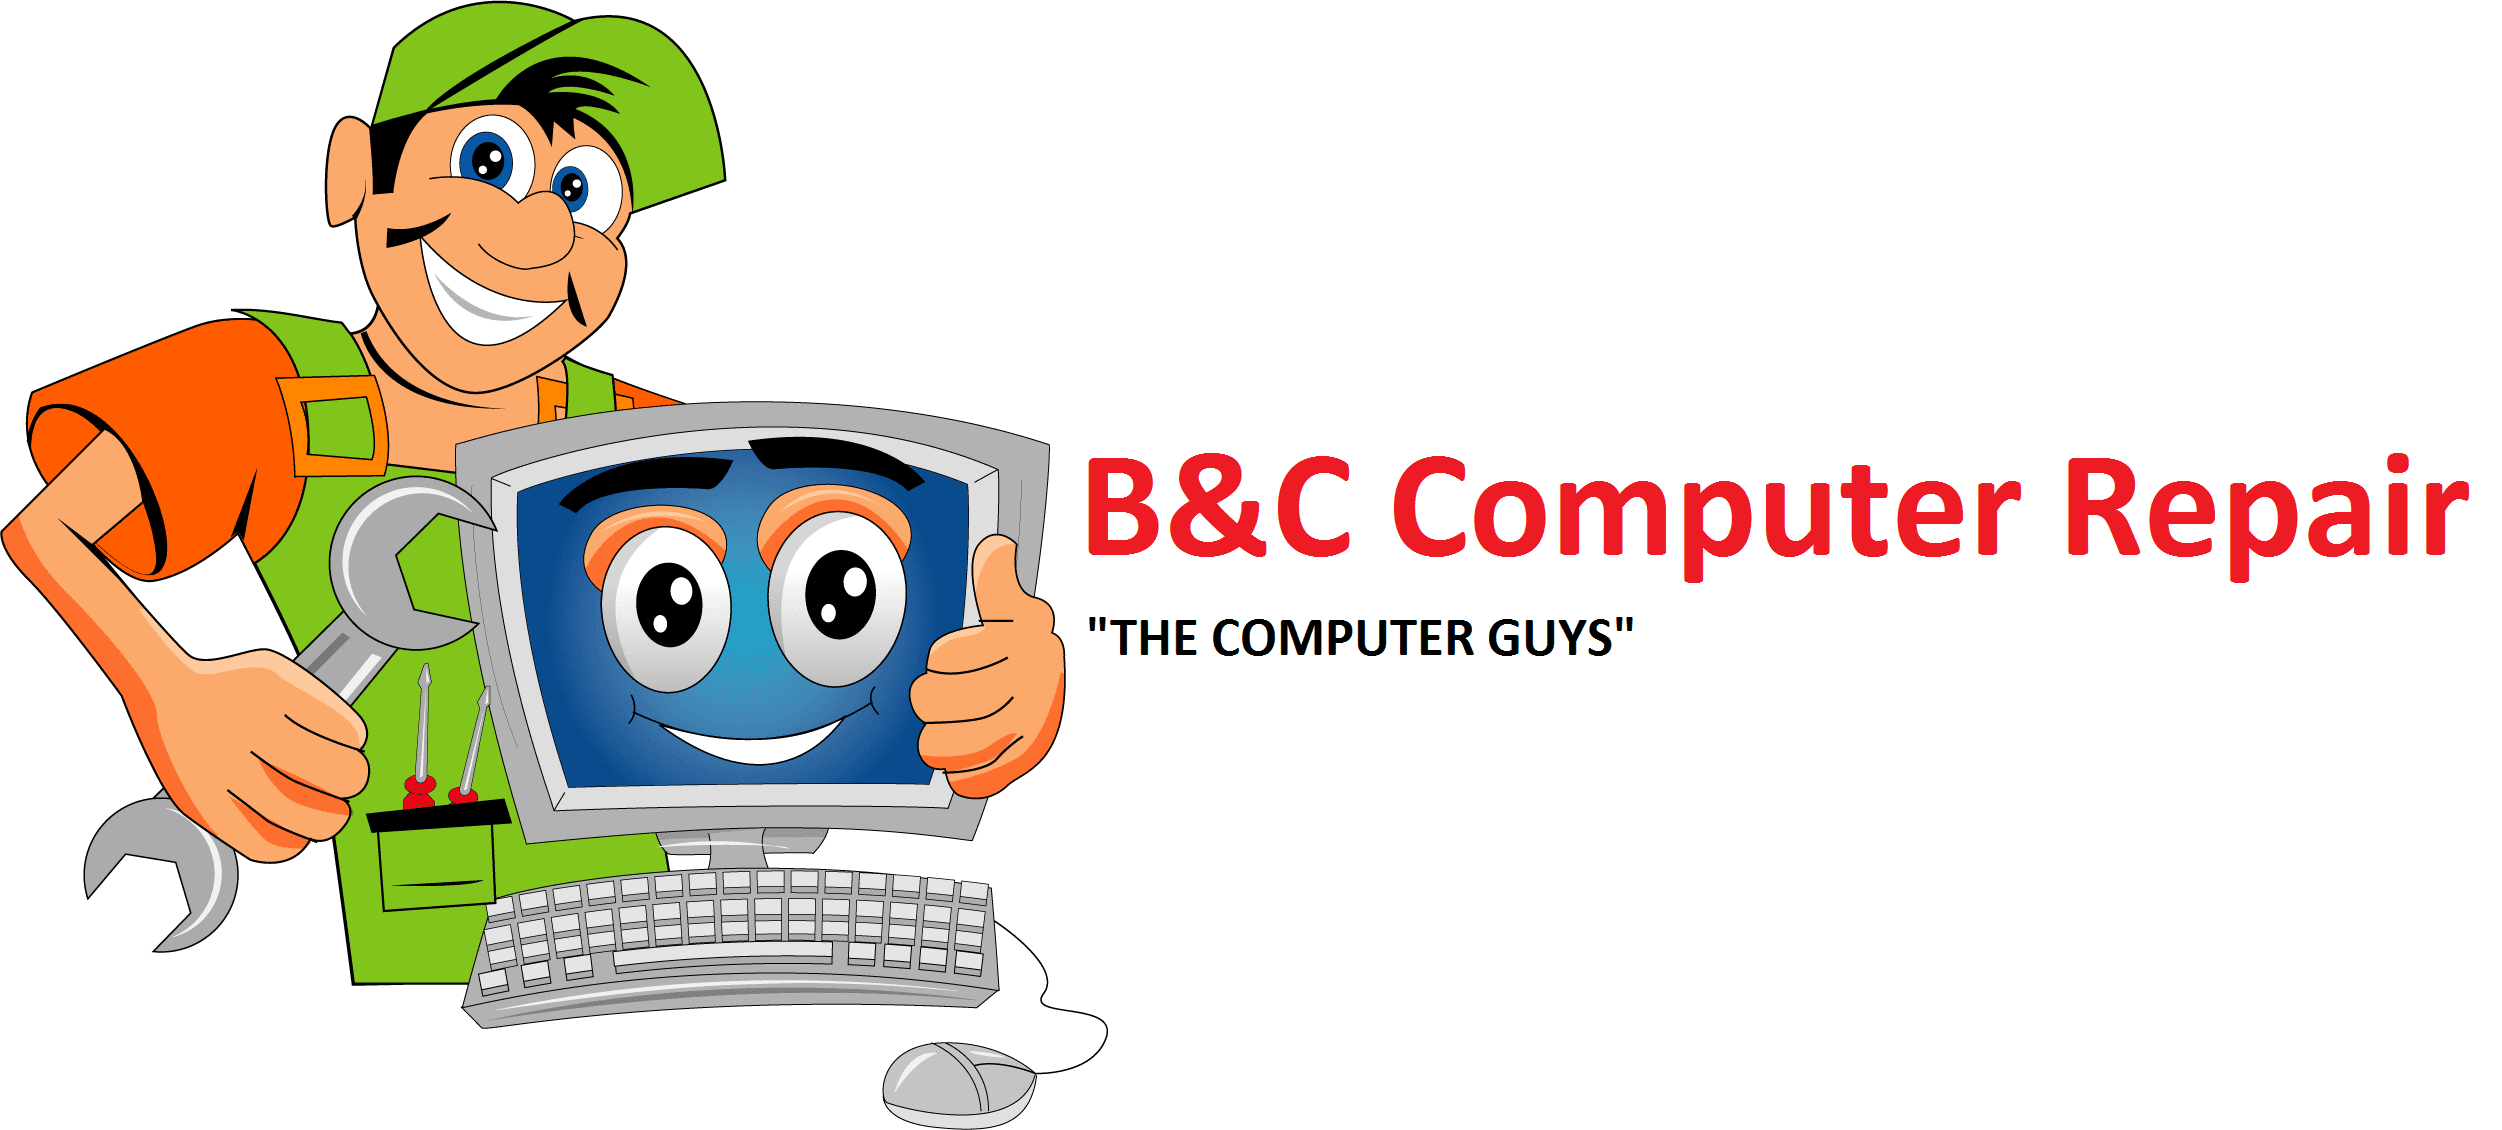 B&C Computer Repair